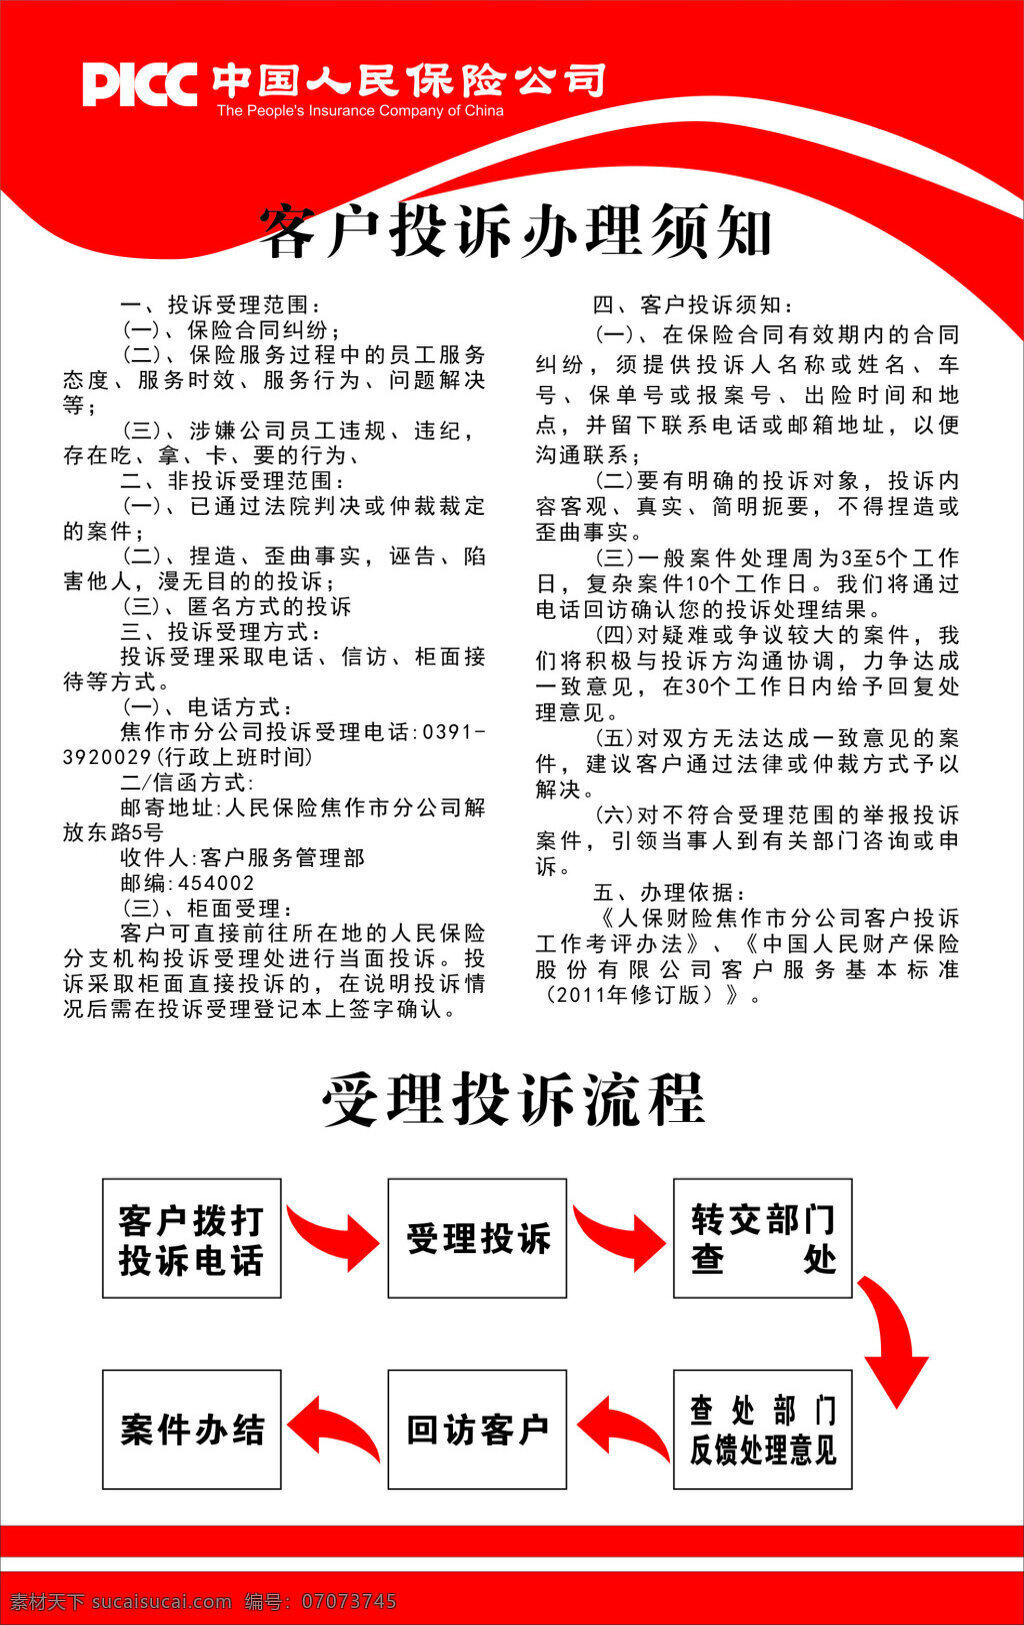 中国人民保险公司 客户 投诉 办理 须知 客户投诉 受理投诉 流程 展板 白色